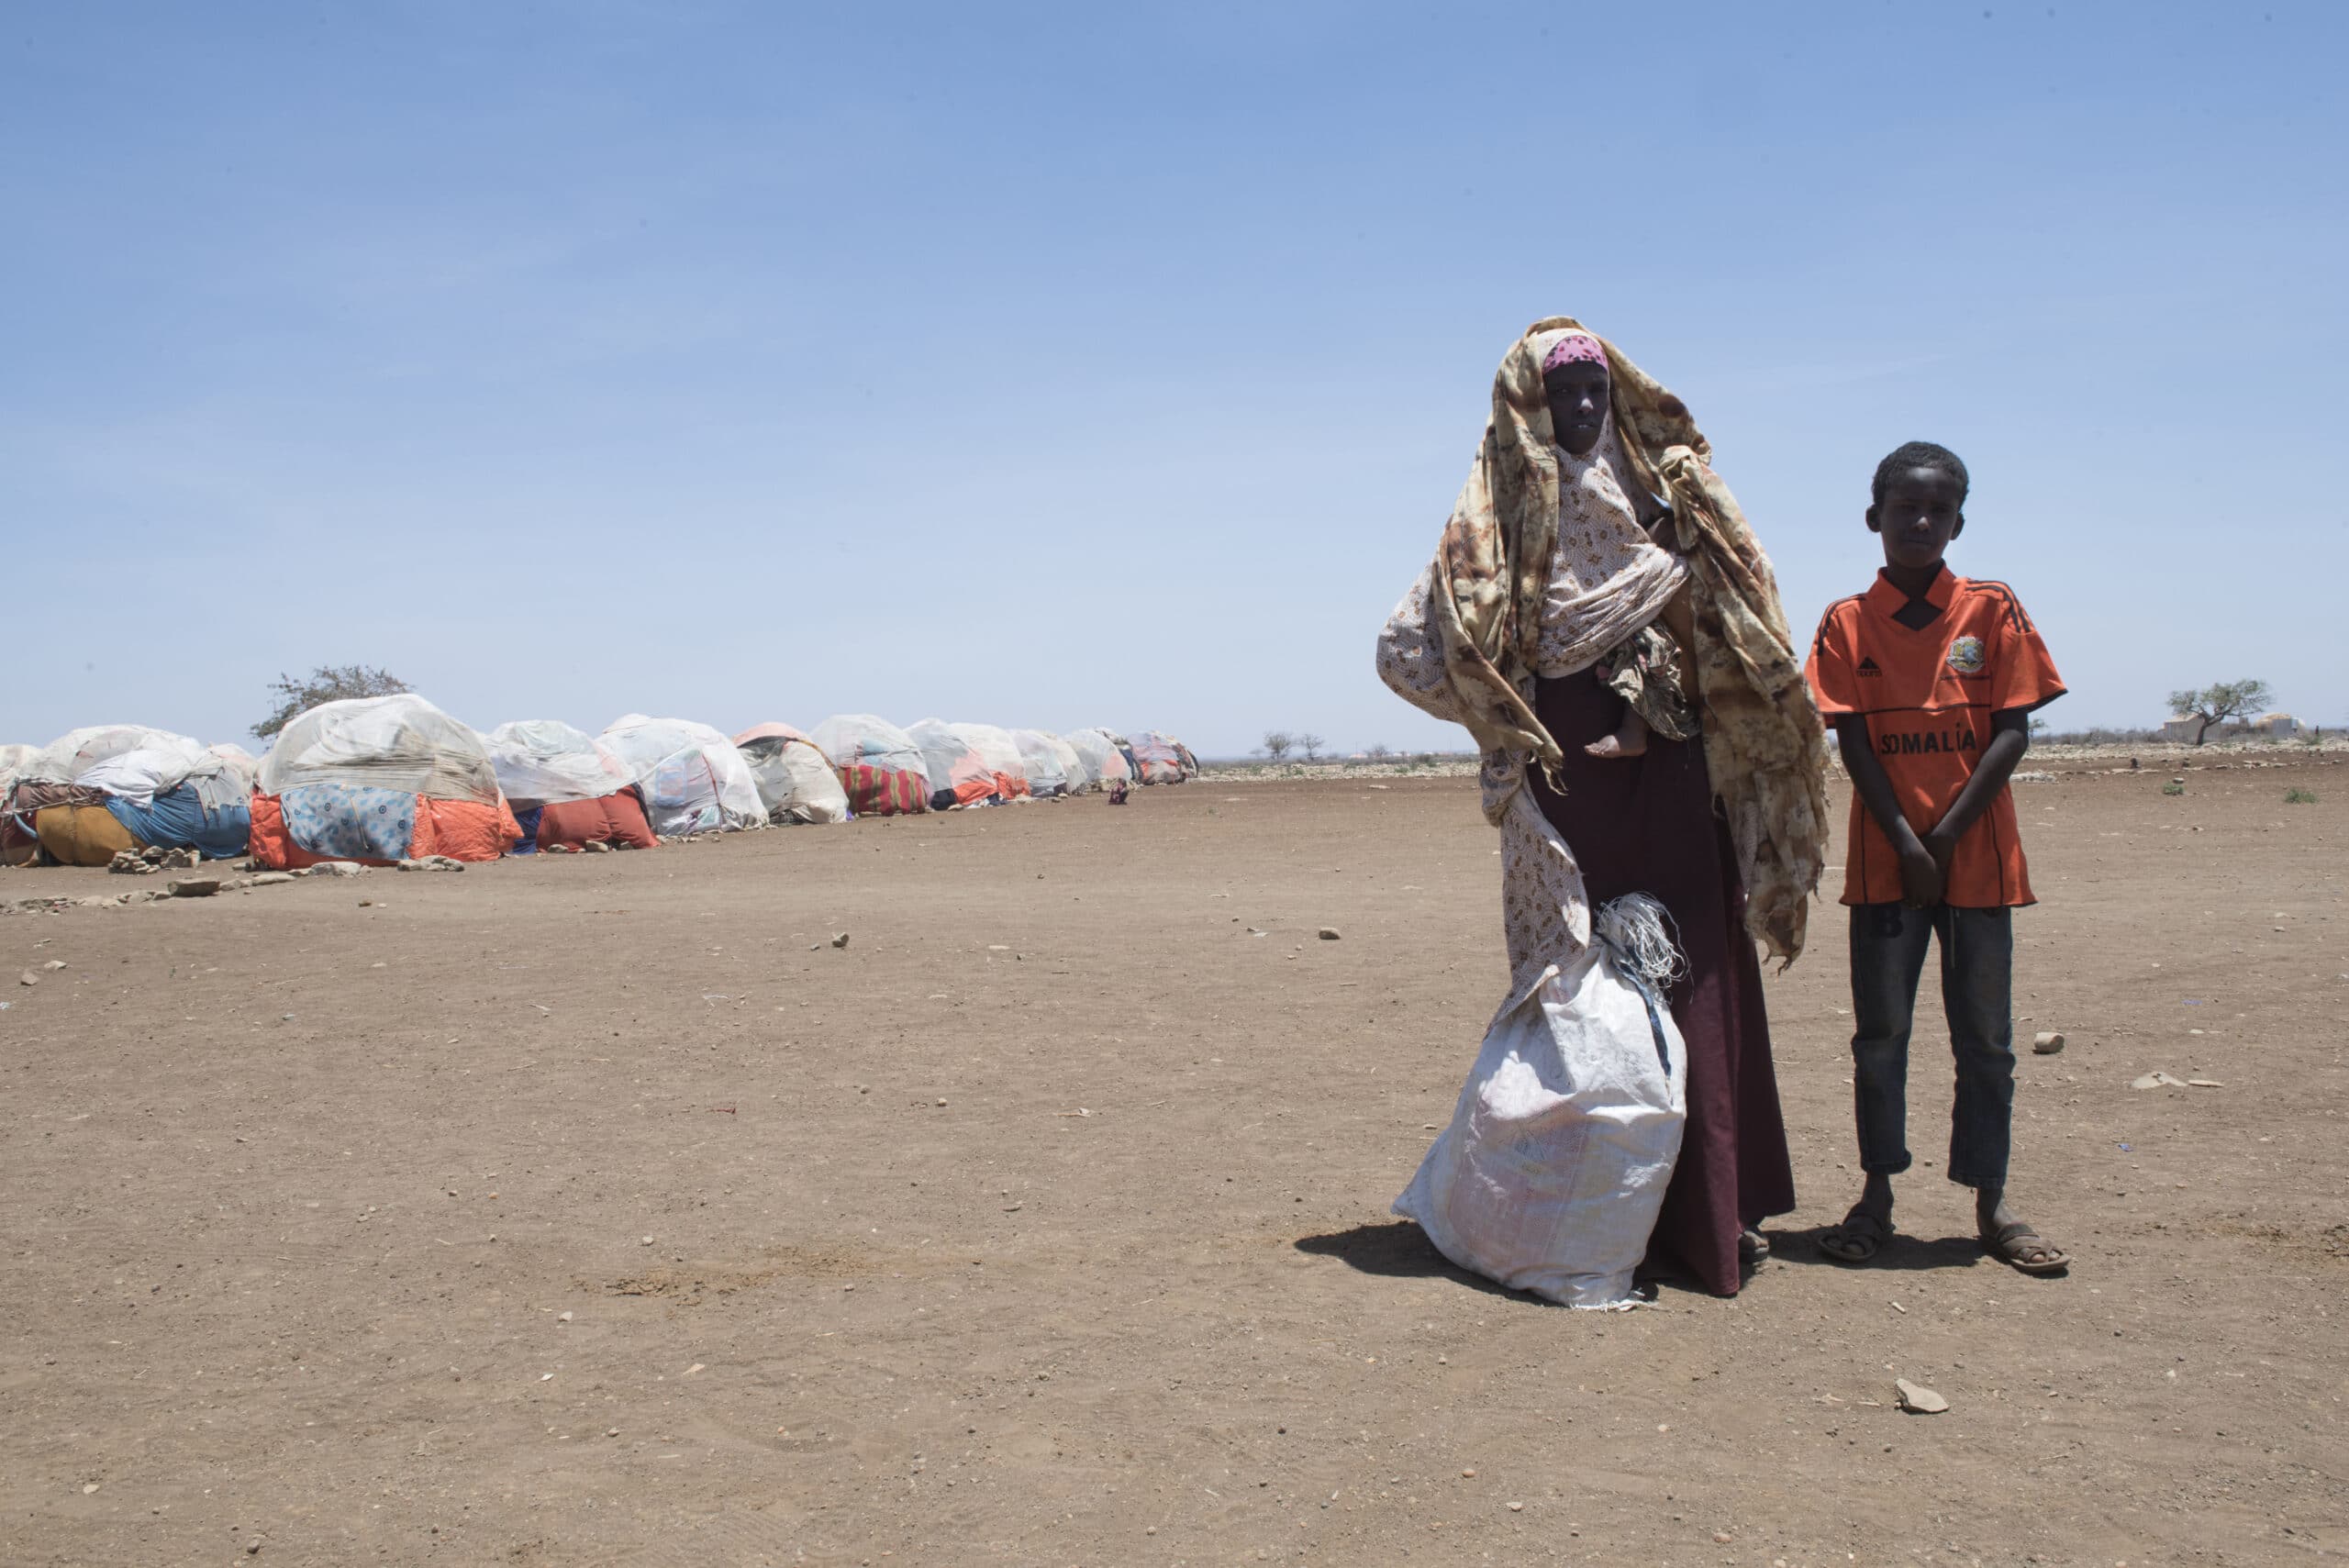 En mor står sammen med 2 av sine sønner og eiendeler i en pose, foran en flyktningleir i Somalia.